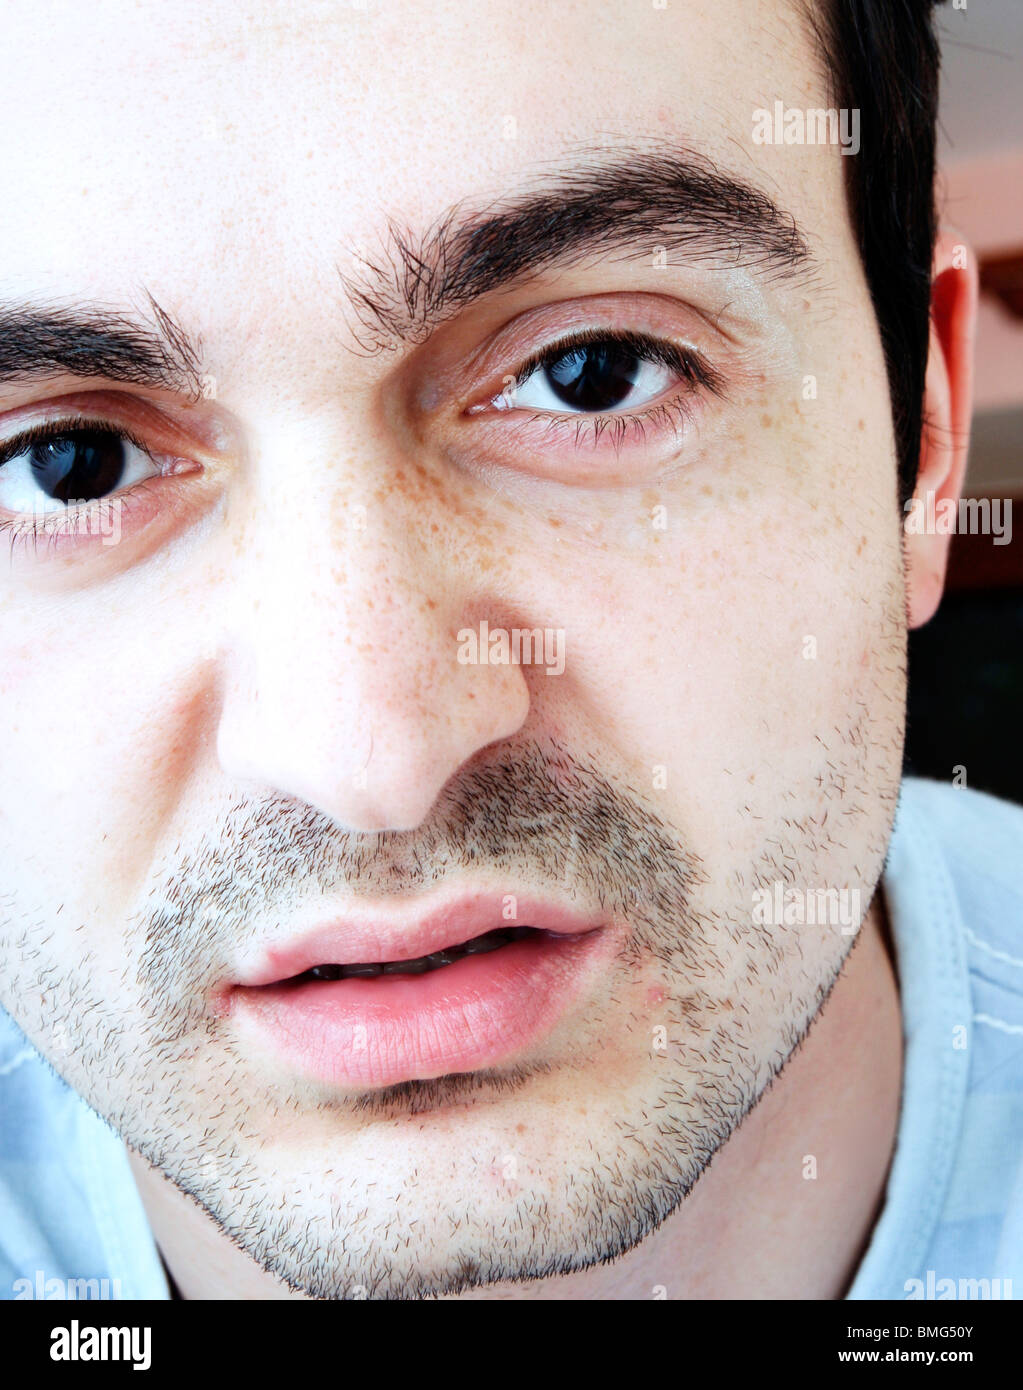 Young man face - close-up Stock Photo